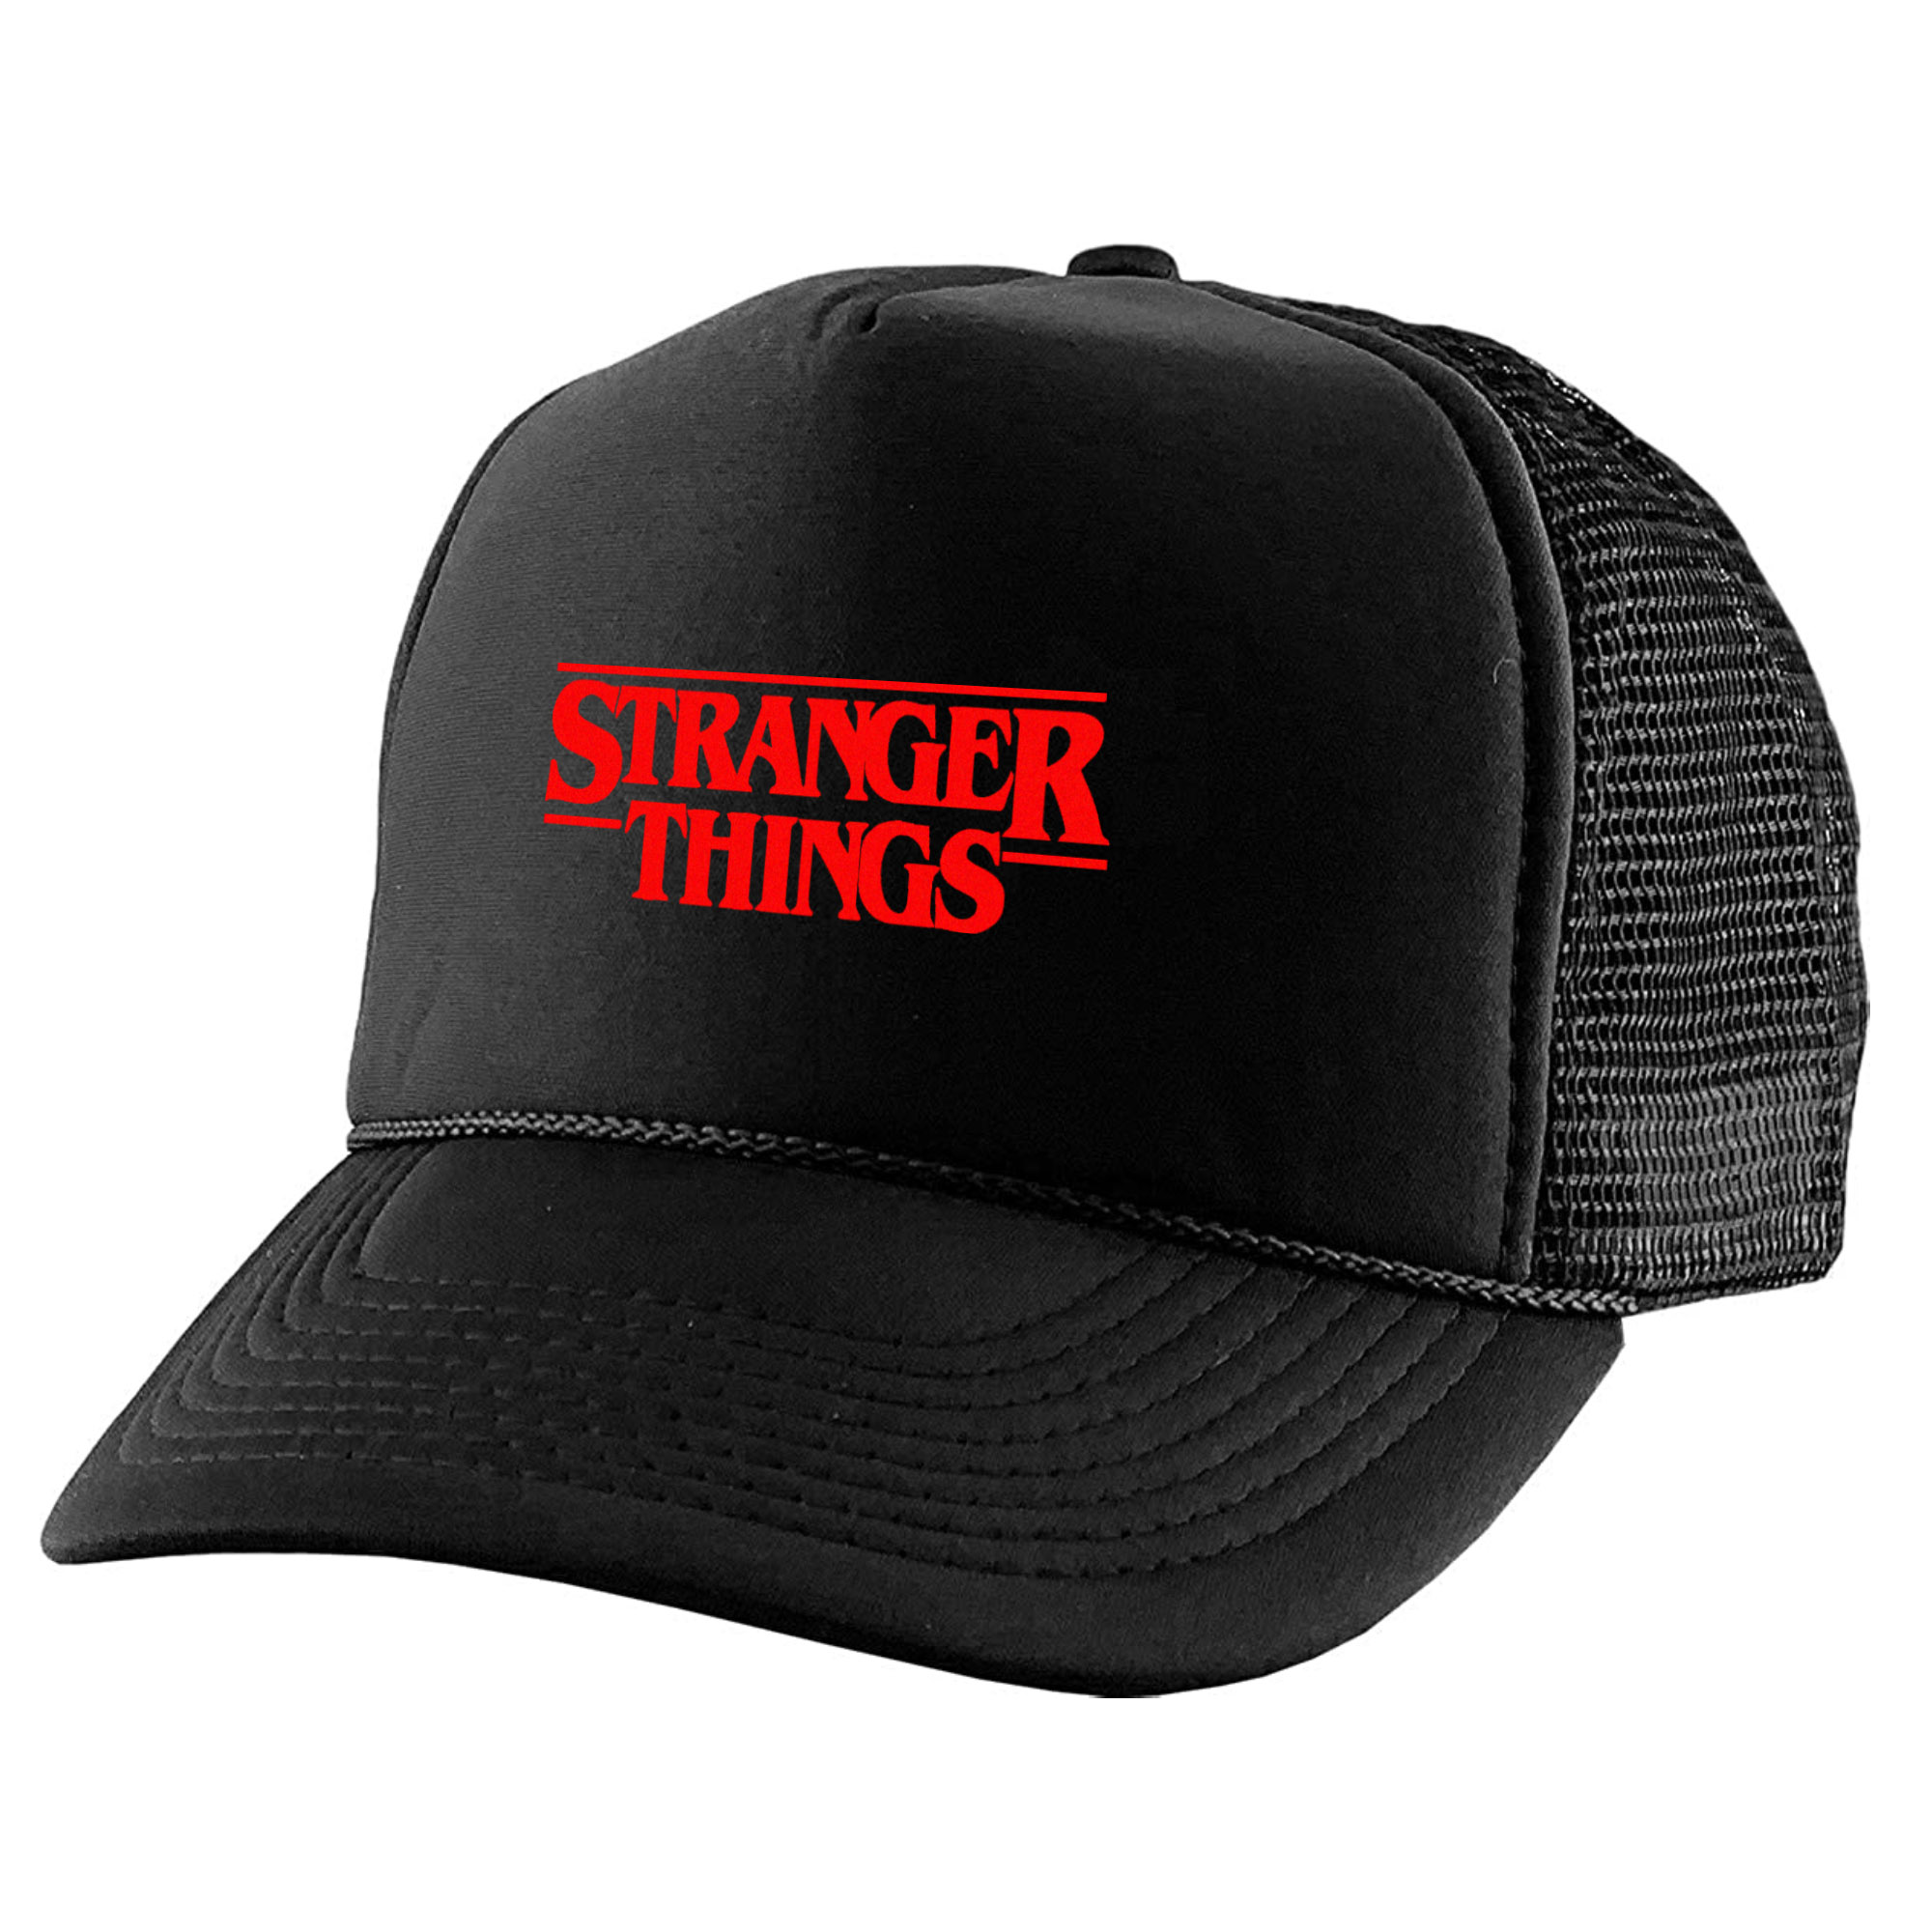 نکته خرید - قیمت روز کلاه کپ مدل Stranger Things کد KPP-23 خرید